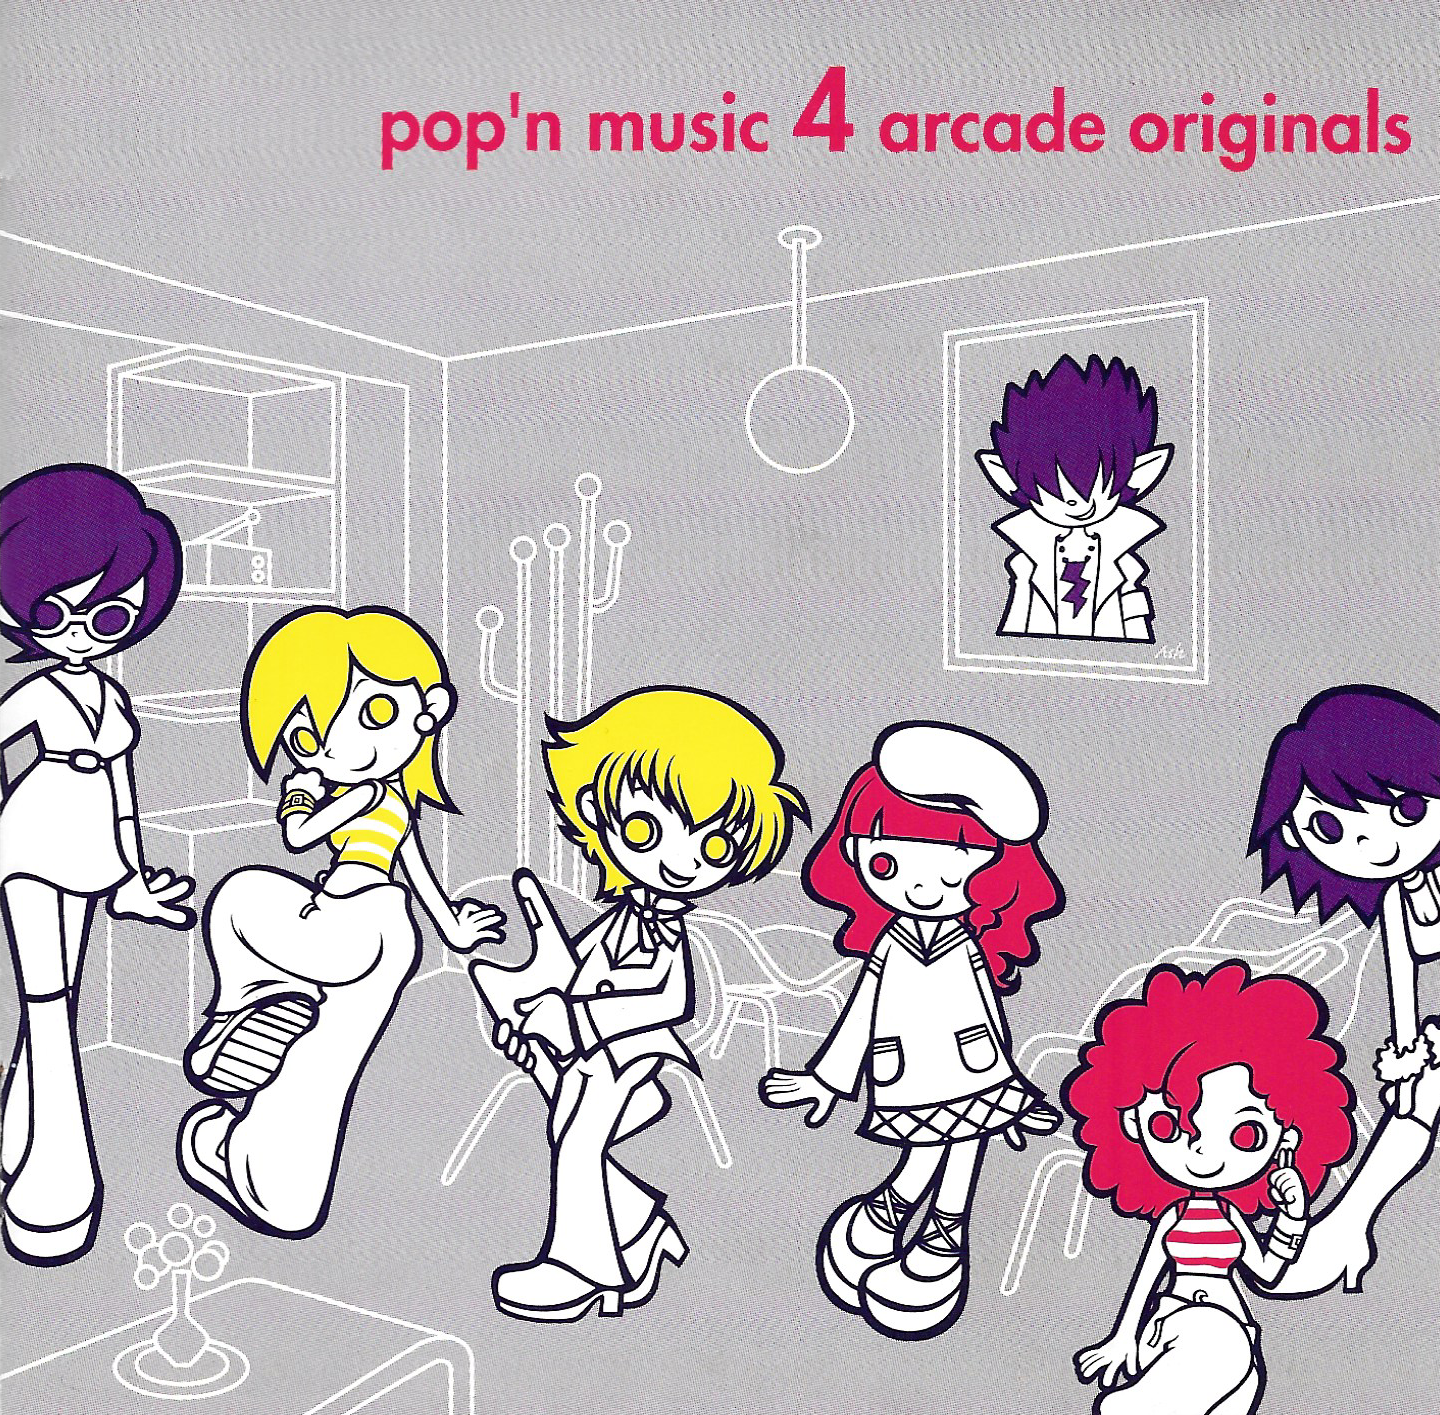 Pop'n music 4 arcade originals (2000) MP3 - Download Pop'n music 4 